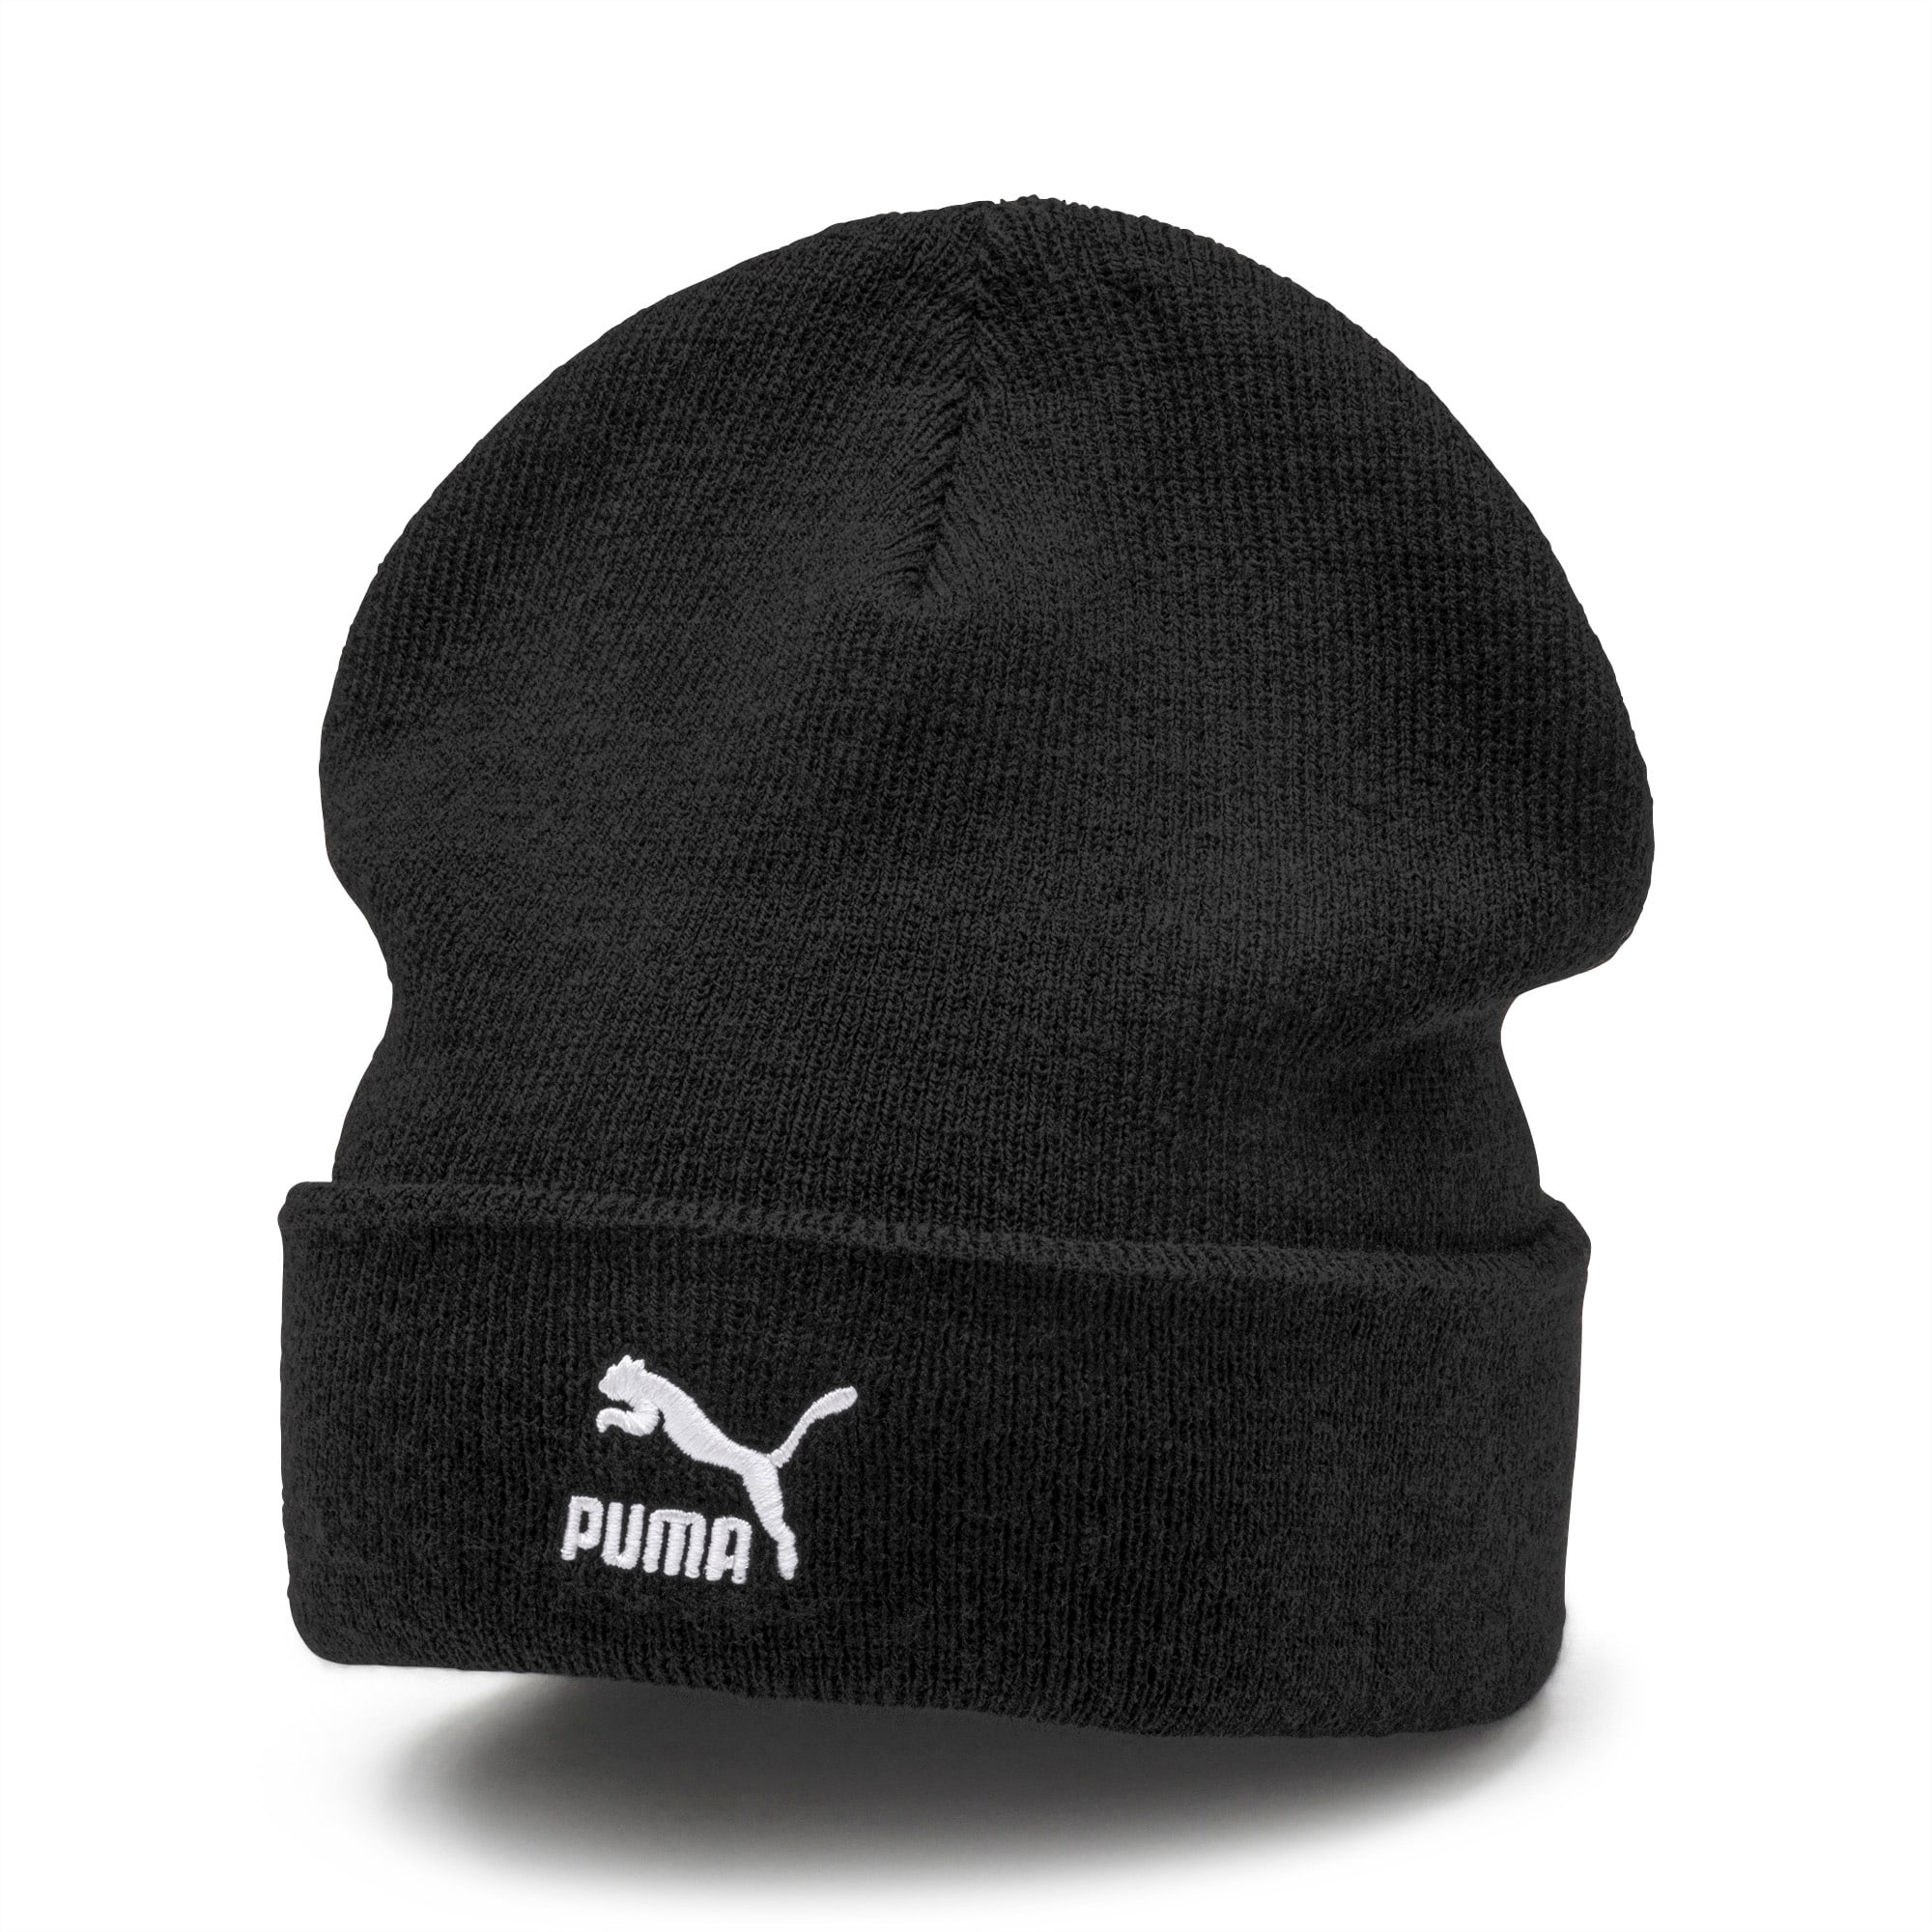 puma knit hat